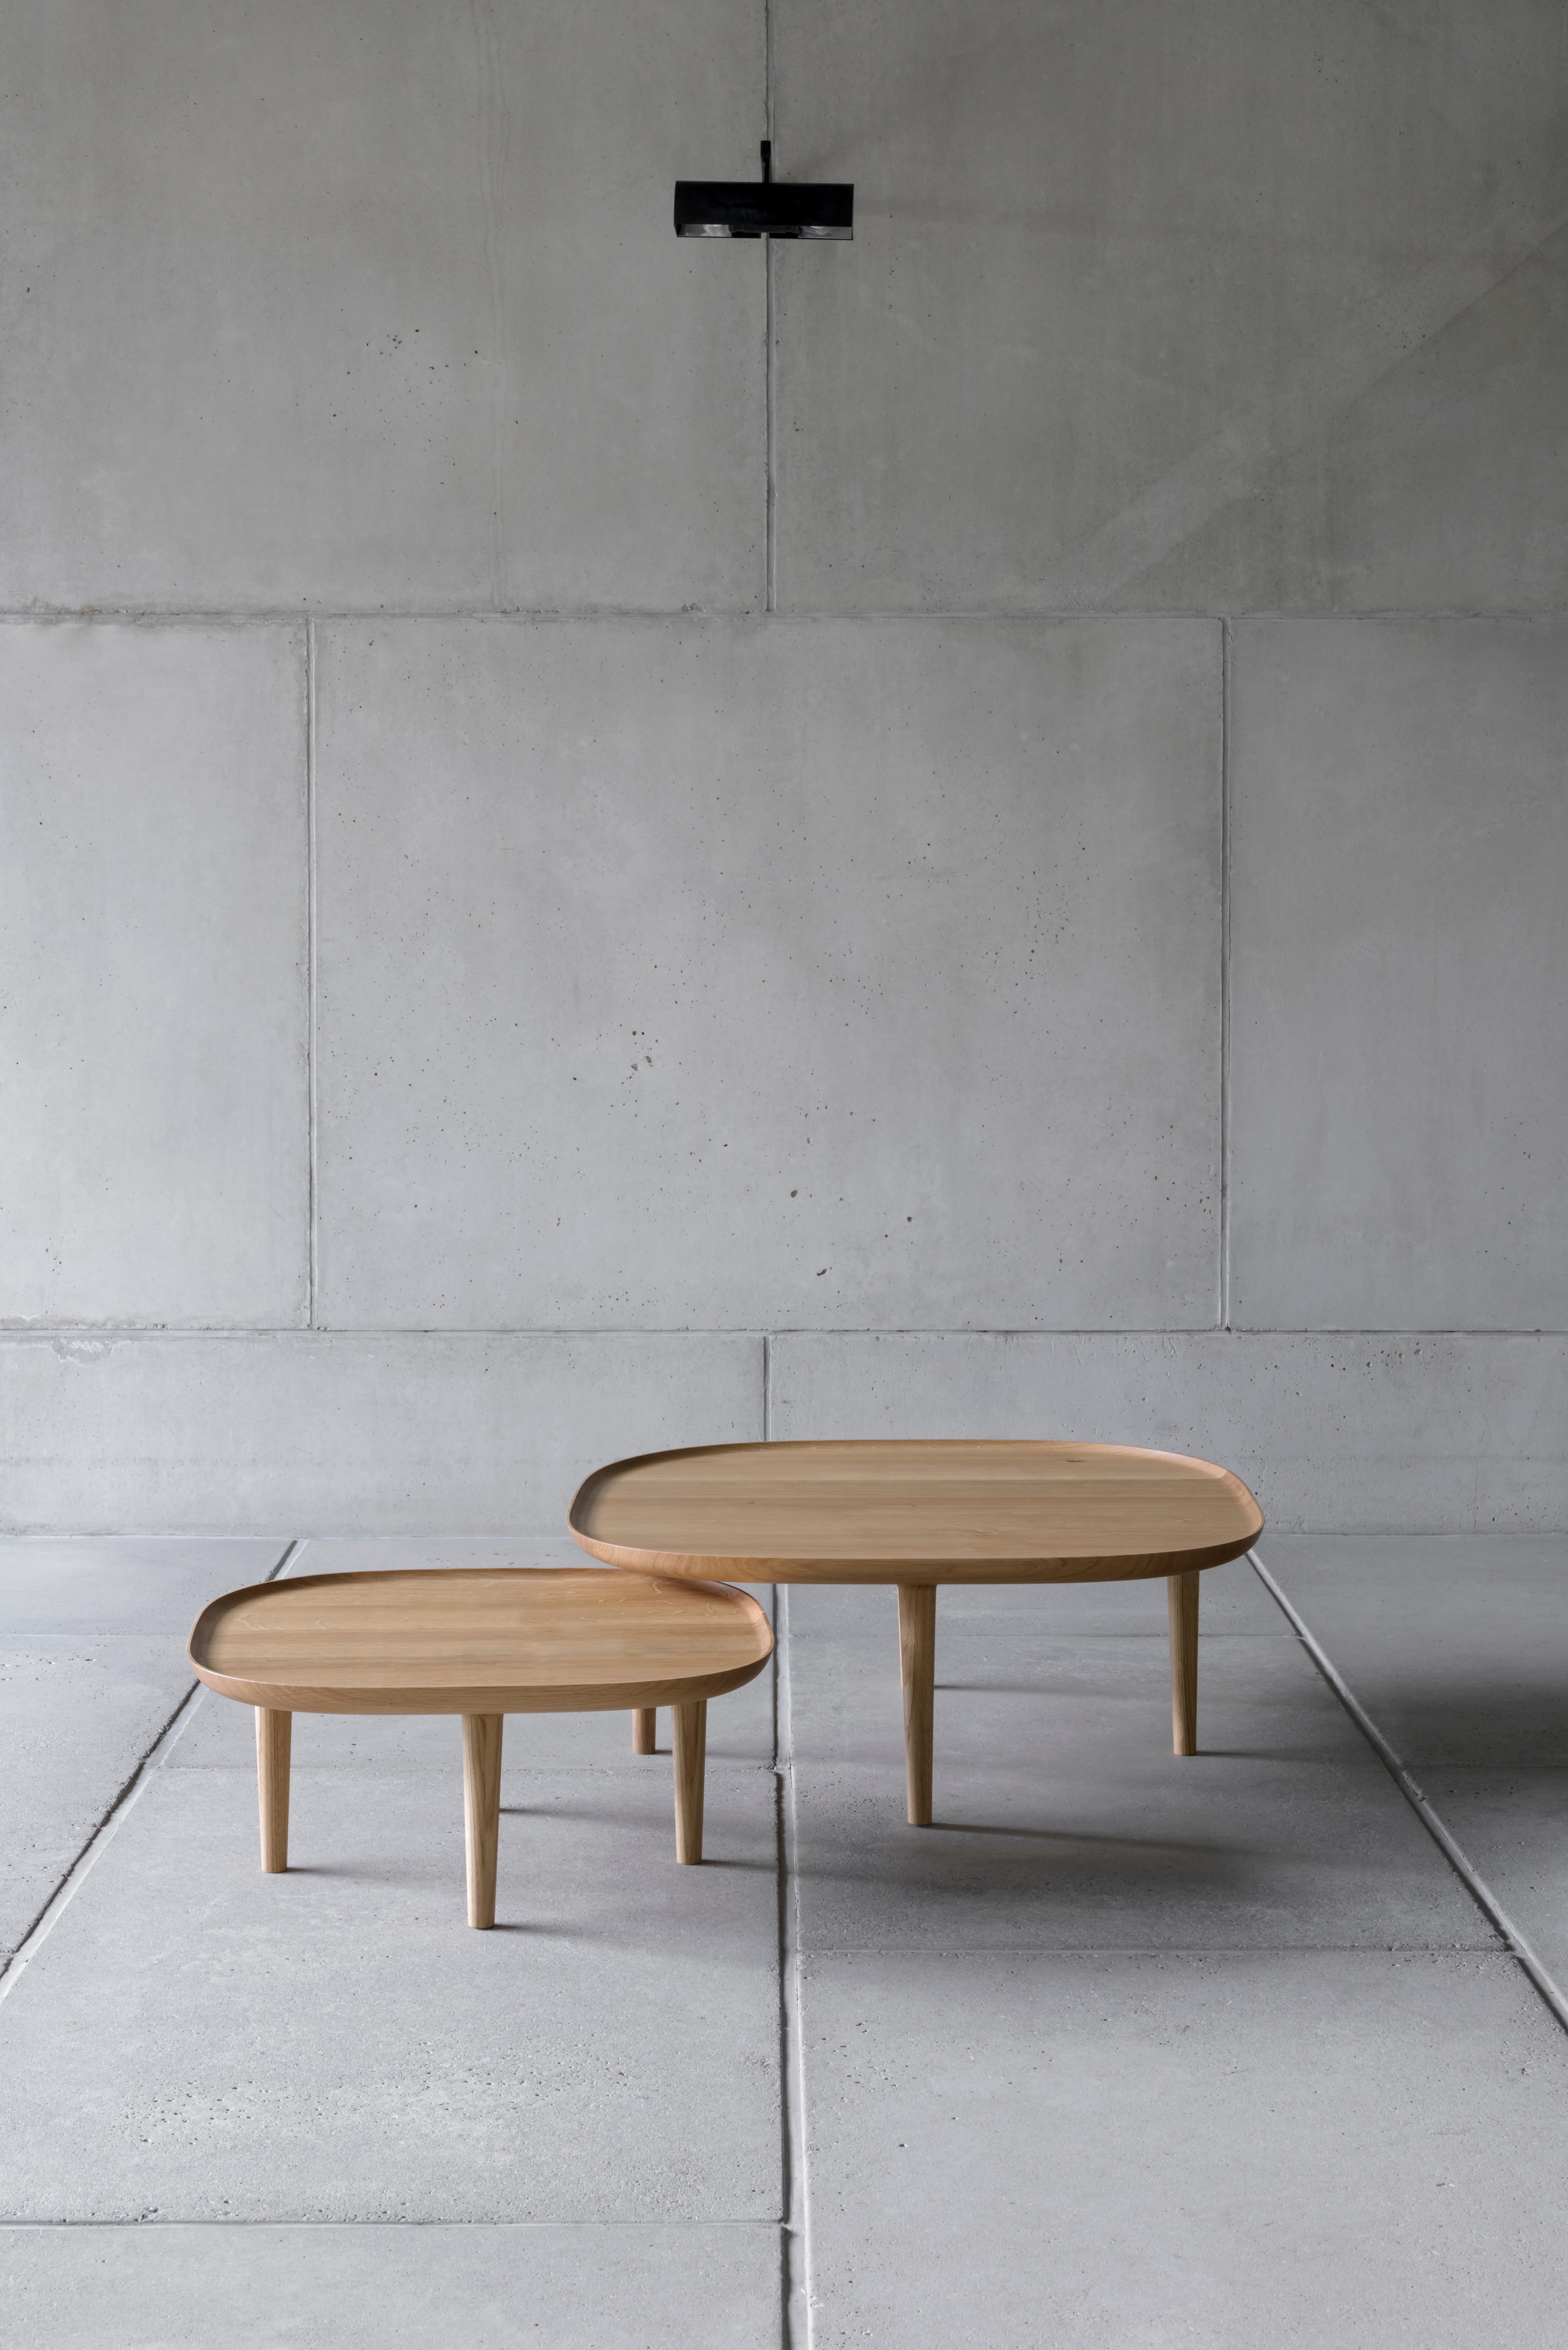 Fiori Table 85 designed by Antrei Hartikainen x Poiat
Fiori Collection 2017

Available finishes: 
- Oak
- Dark oak 
- Black oak

Model shown in picture : 
- H.35 x 85 x 85 cm
- Oak

Designed by Poiat Studio in collaboration with the